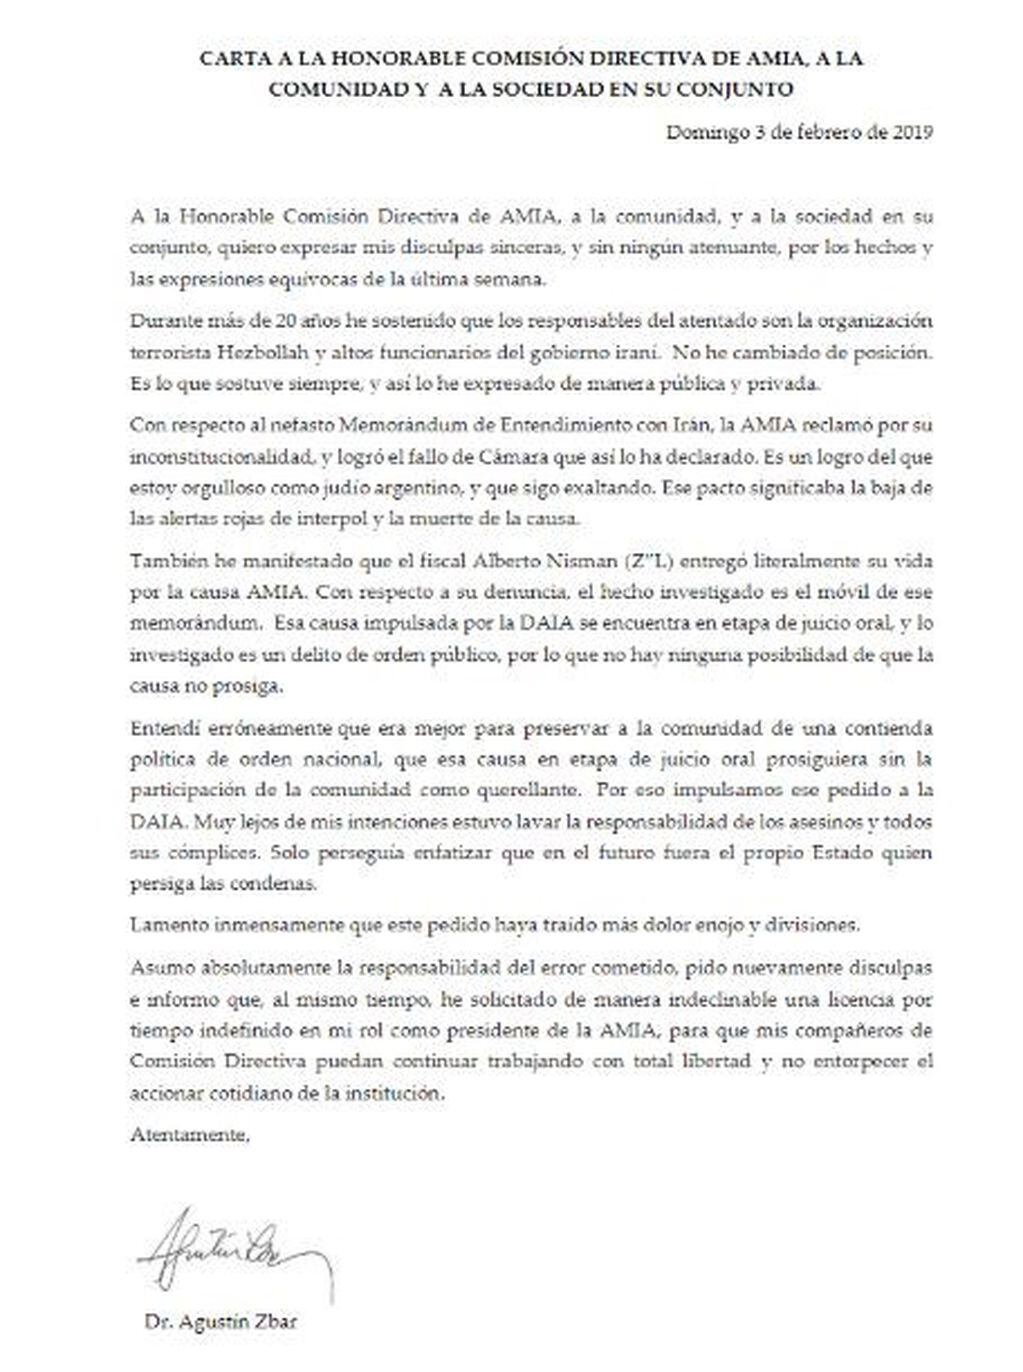 La carta del Dr. Agustín Zbar, presidente de la AMIA.